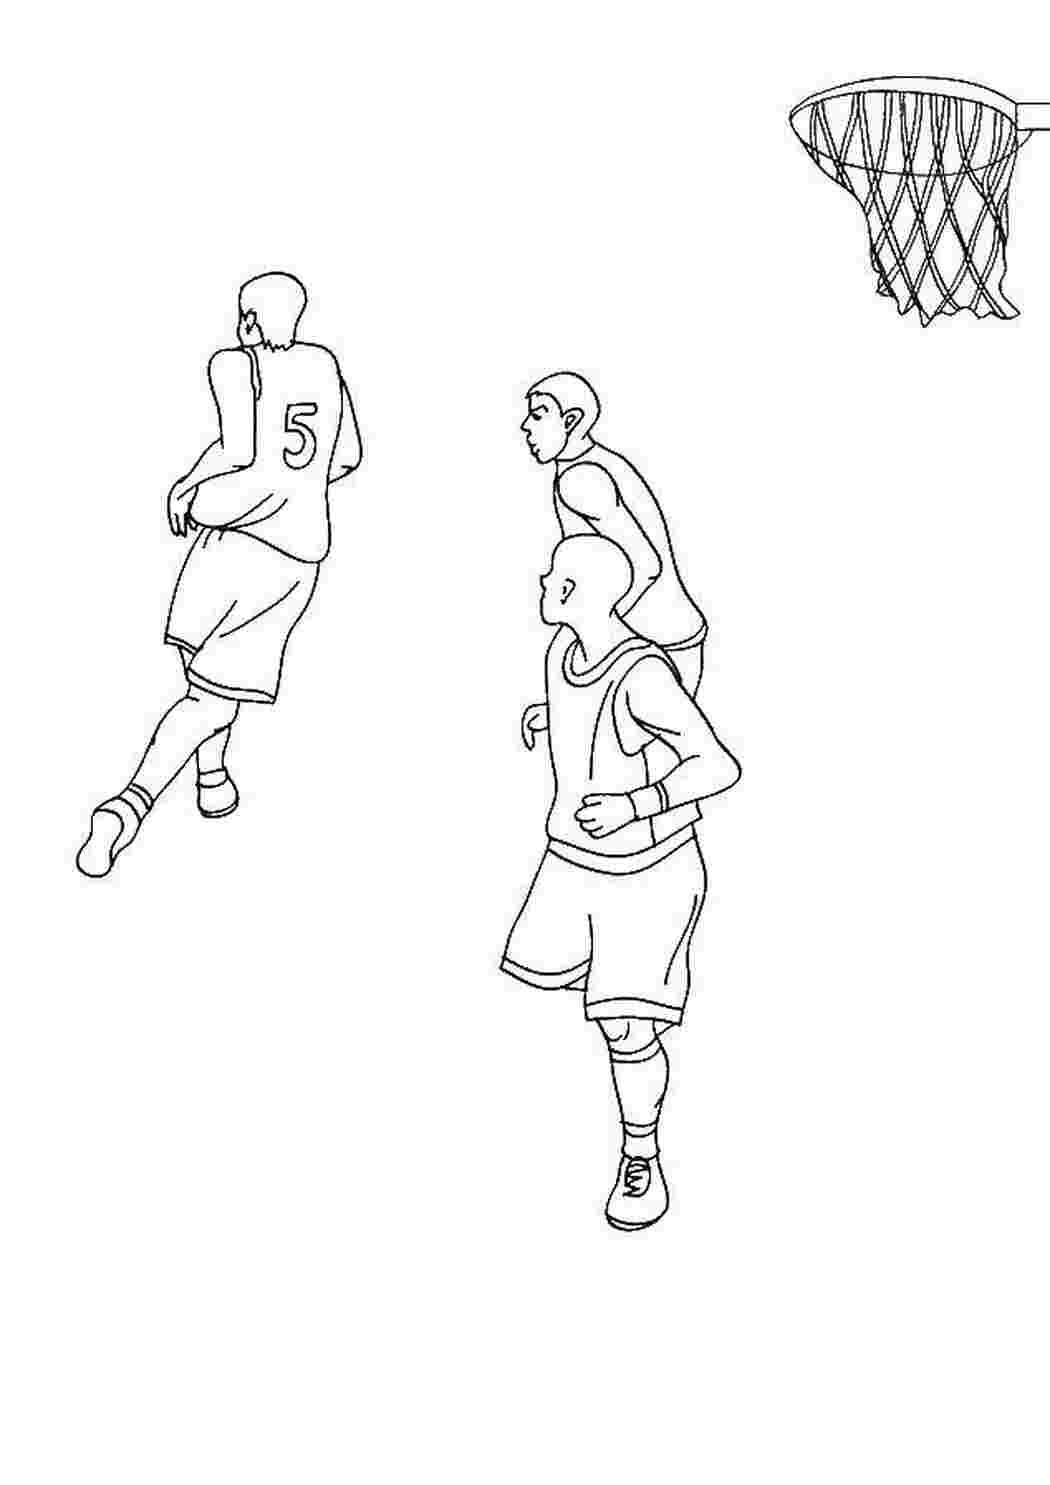 Рисунок баскетболиста в движении